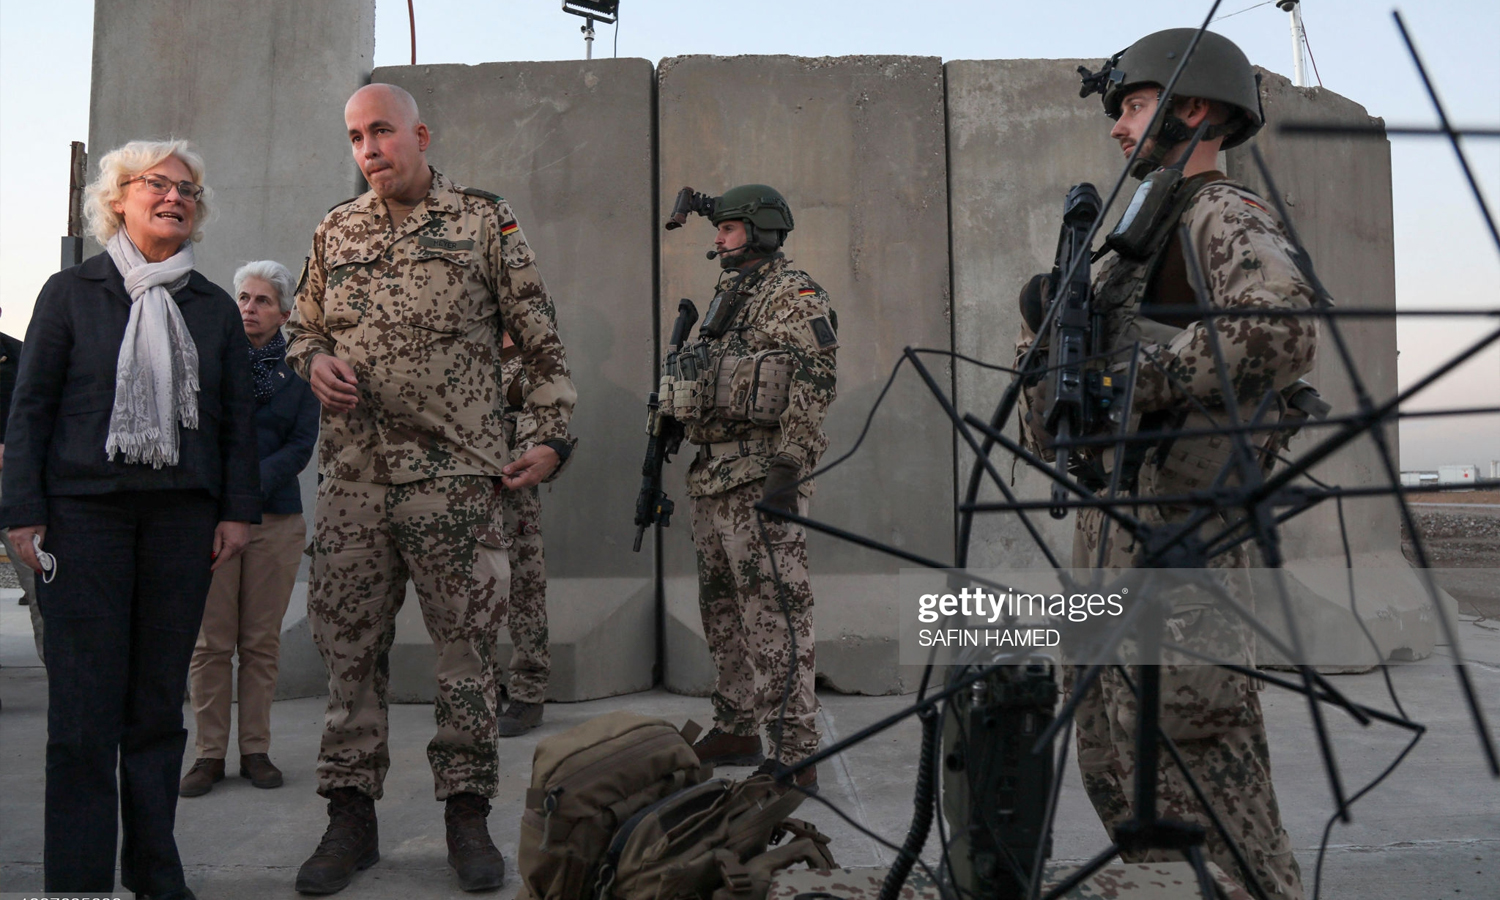 وزيرة الدفاع الألمانية، كريستينه لامبرشت، تتحدث إلى الجنود أثناء زيارتها للقوات المسلحة الألمانية في أربيل، 9 من كانون الثاني 2022 (صافين حامد – GettyImages)